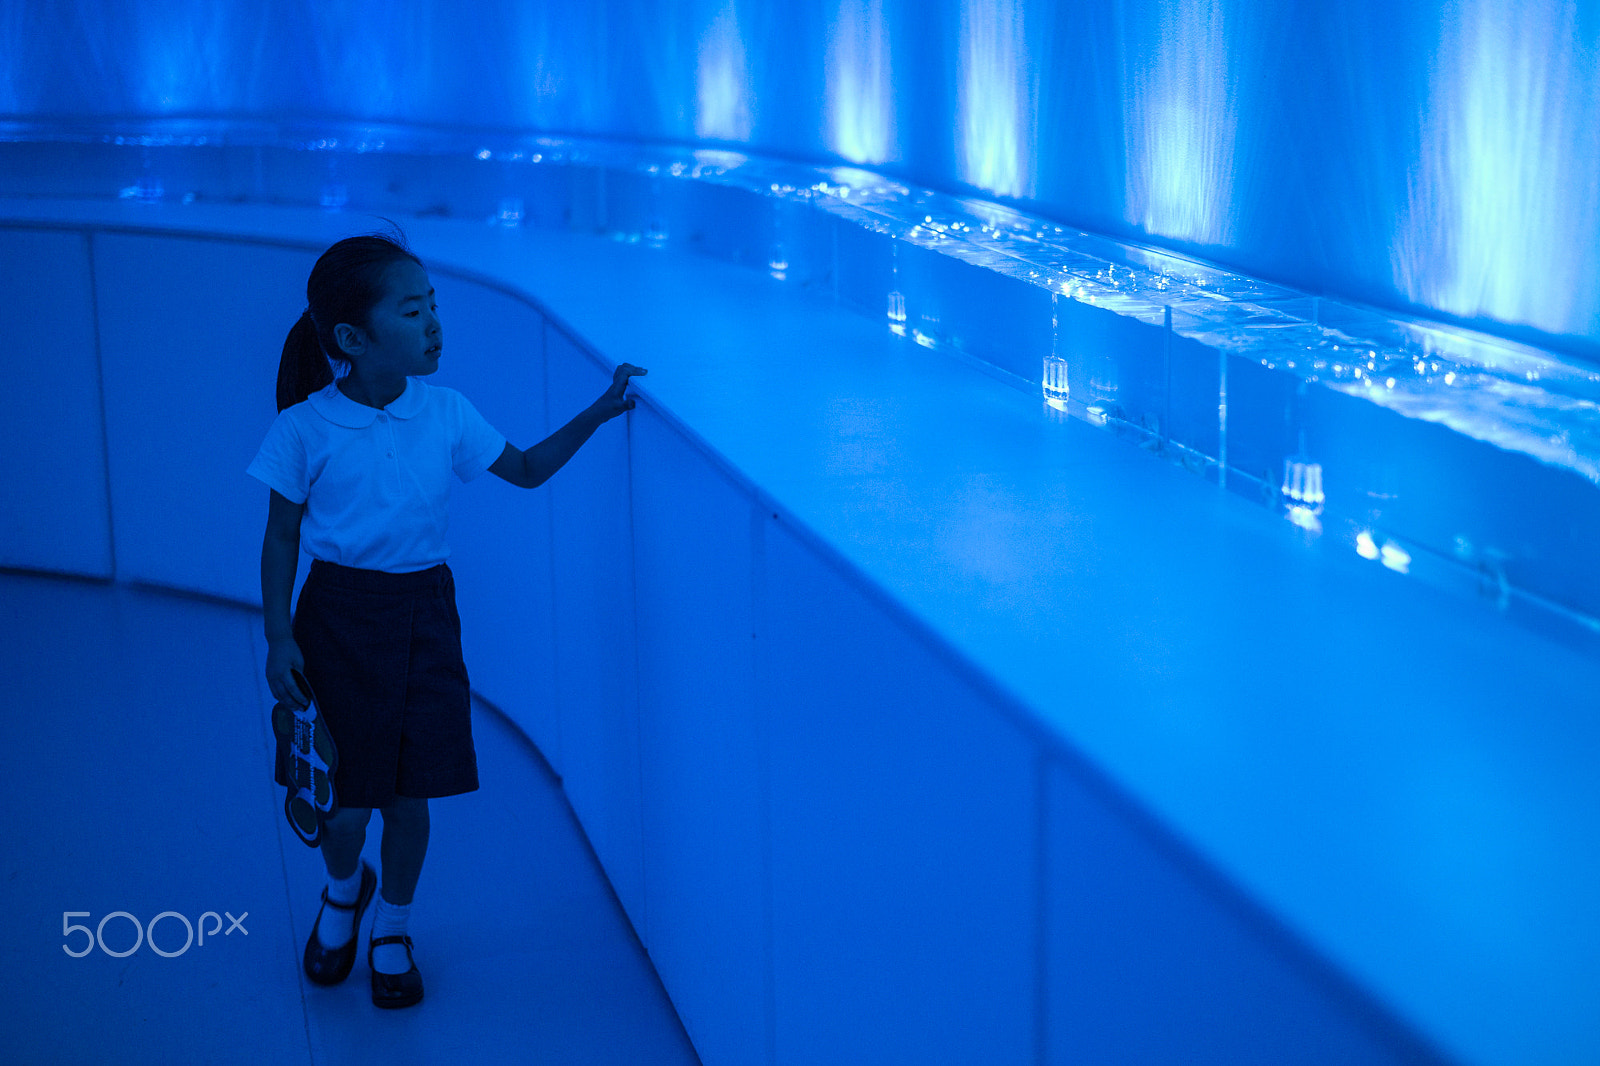 Leica M9 + Leica Summicron-M 28mm F2 ASPH sample photo. Little girl in a blue aquarium photography